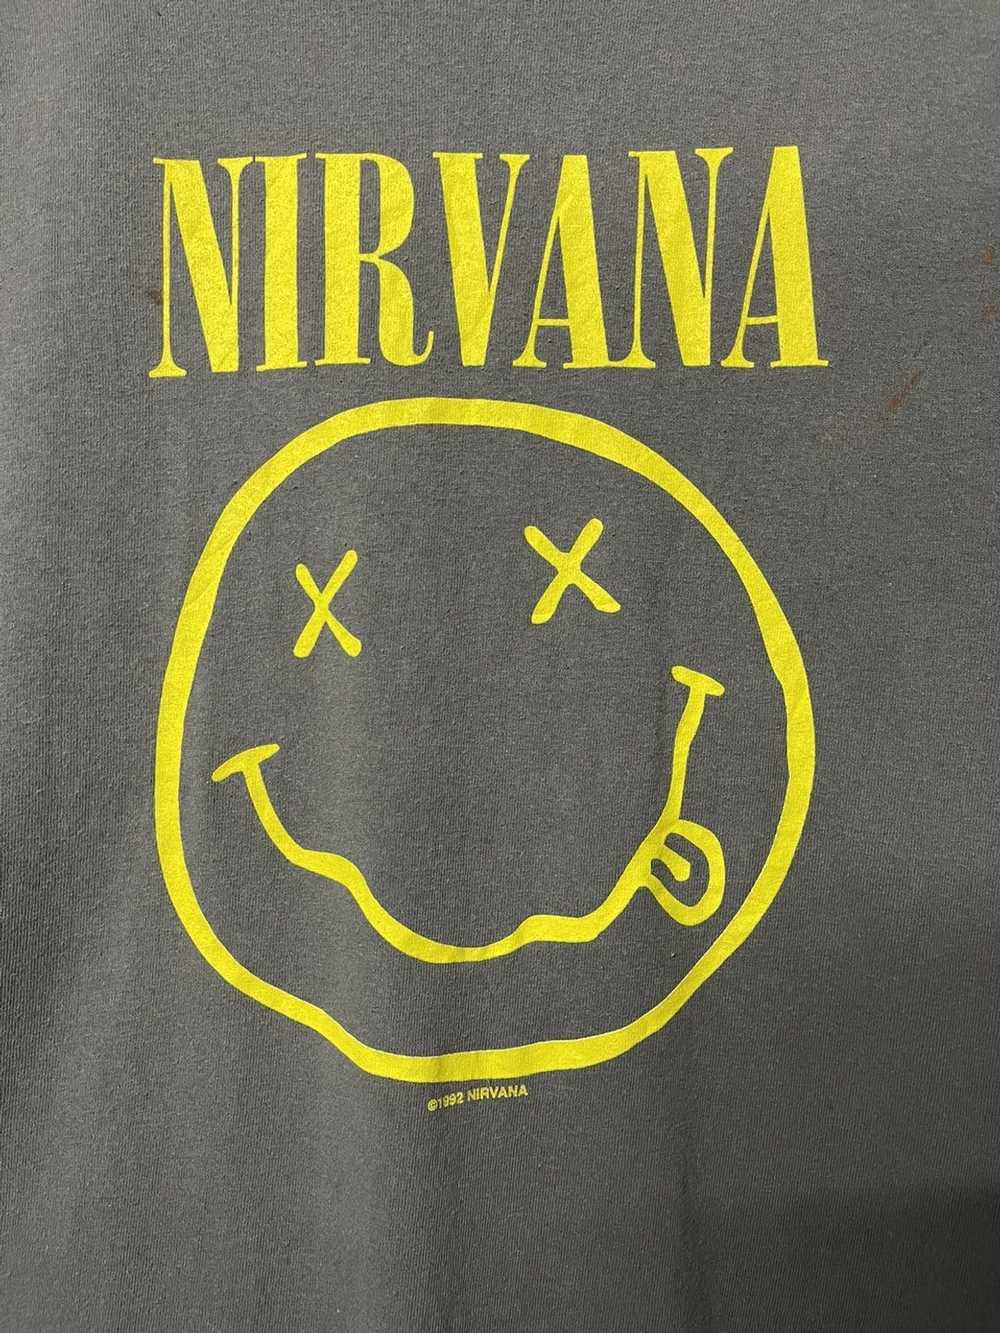 Kurt Cobain × Nirvana × Vintage Vintage 1992 Nirv… - image 2